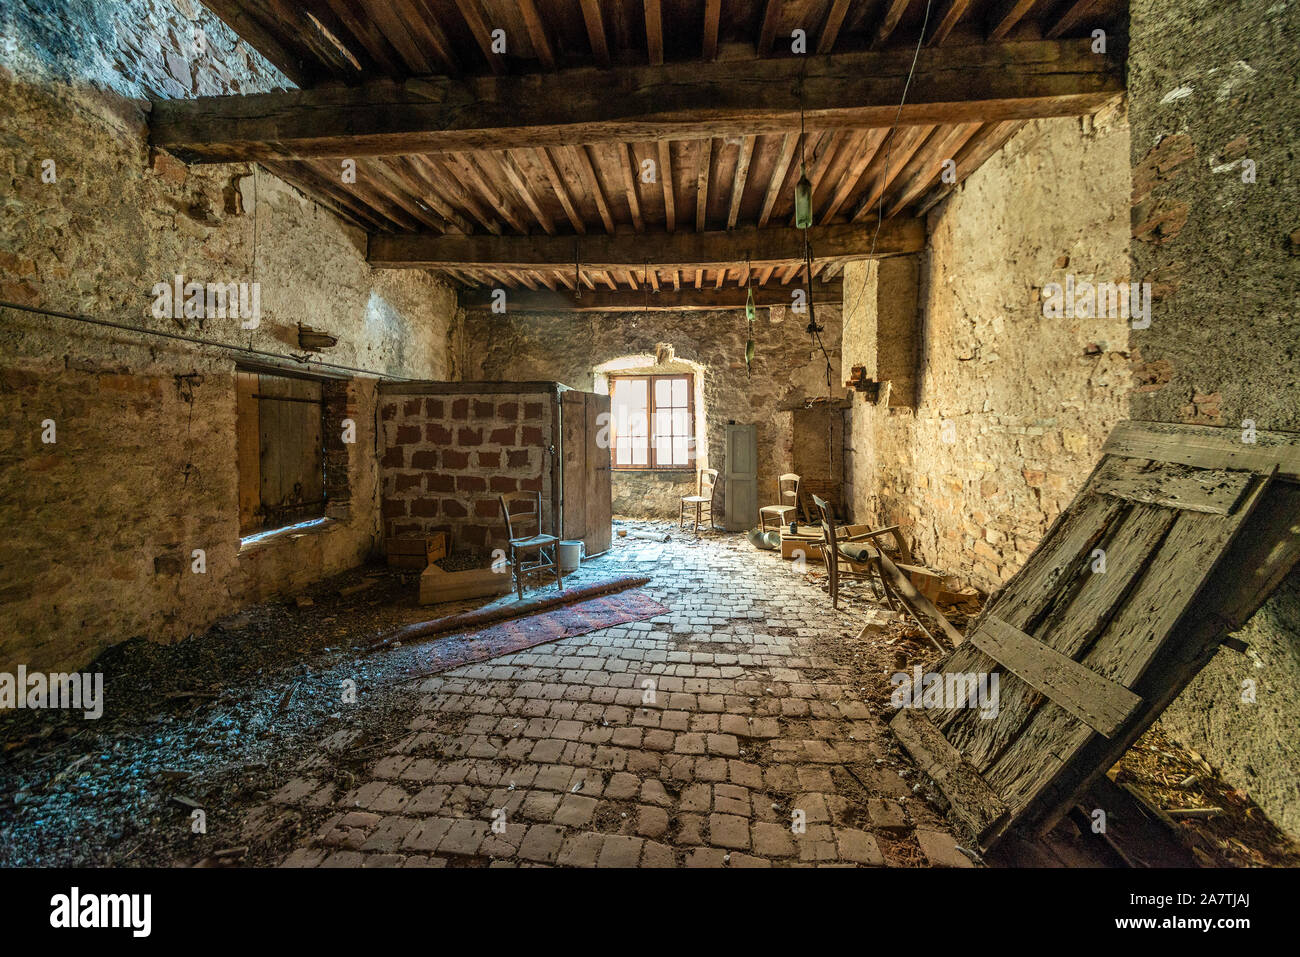 Une chambre abandonnée recouverte de poussière dans une maison médiévale française, avec poutres en bois intactes et carrelage au sol, illuminée par la lumière naturelle de la fenêtre. Banque D'Images